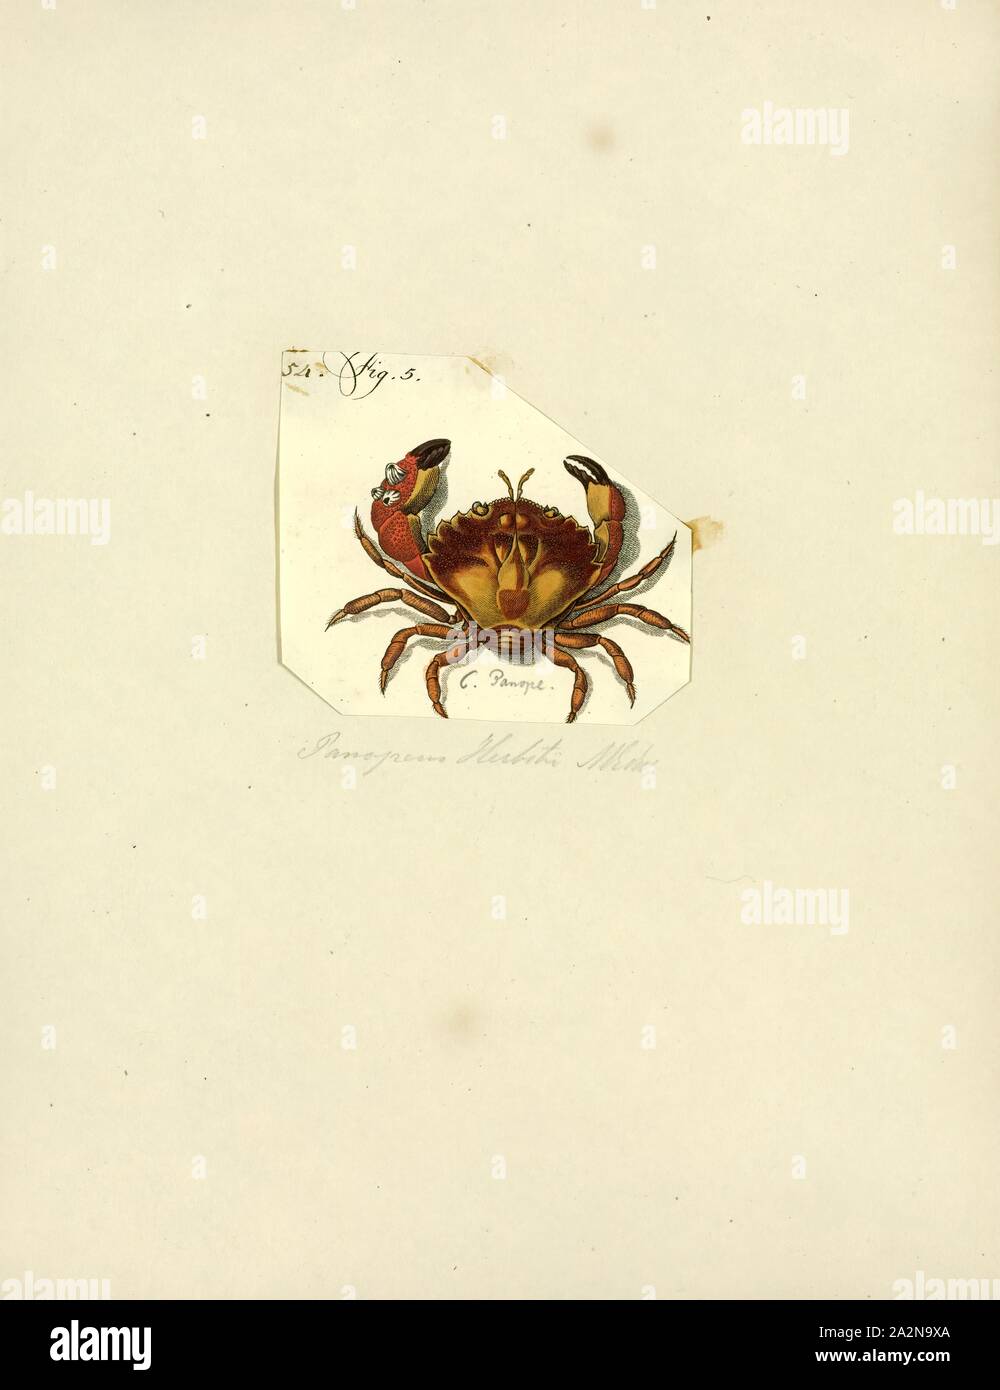 Panopeus herbstii herbstii Panopeus, impression, noir (le crabe de boue aux doigts griffus, noir-crabe de boue, de la boue de l'Atlantique ou du crabe commun parfois crabe de boue) est un vrai crabe, appartenant à l'infraordre Brachyura, c'est la plus vaste des crabes de boue Banque D'Images